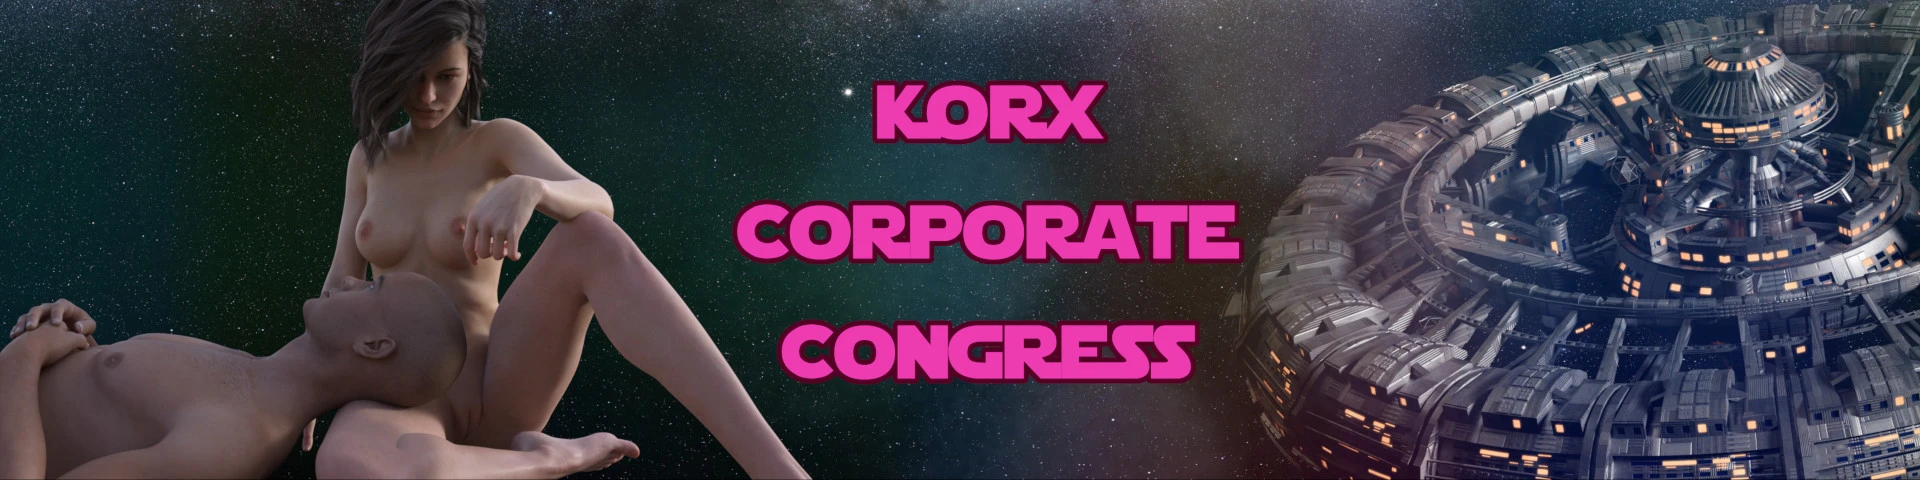 Korx Corporate Congress [v0.11] main image